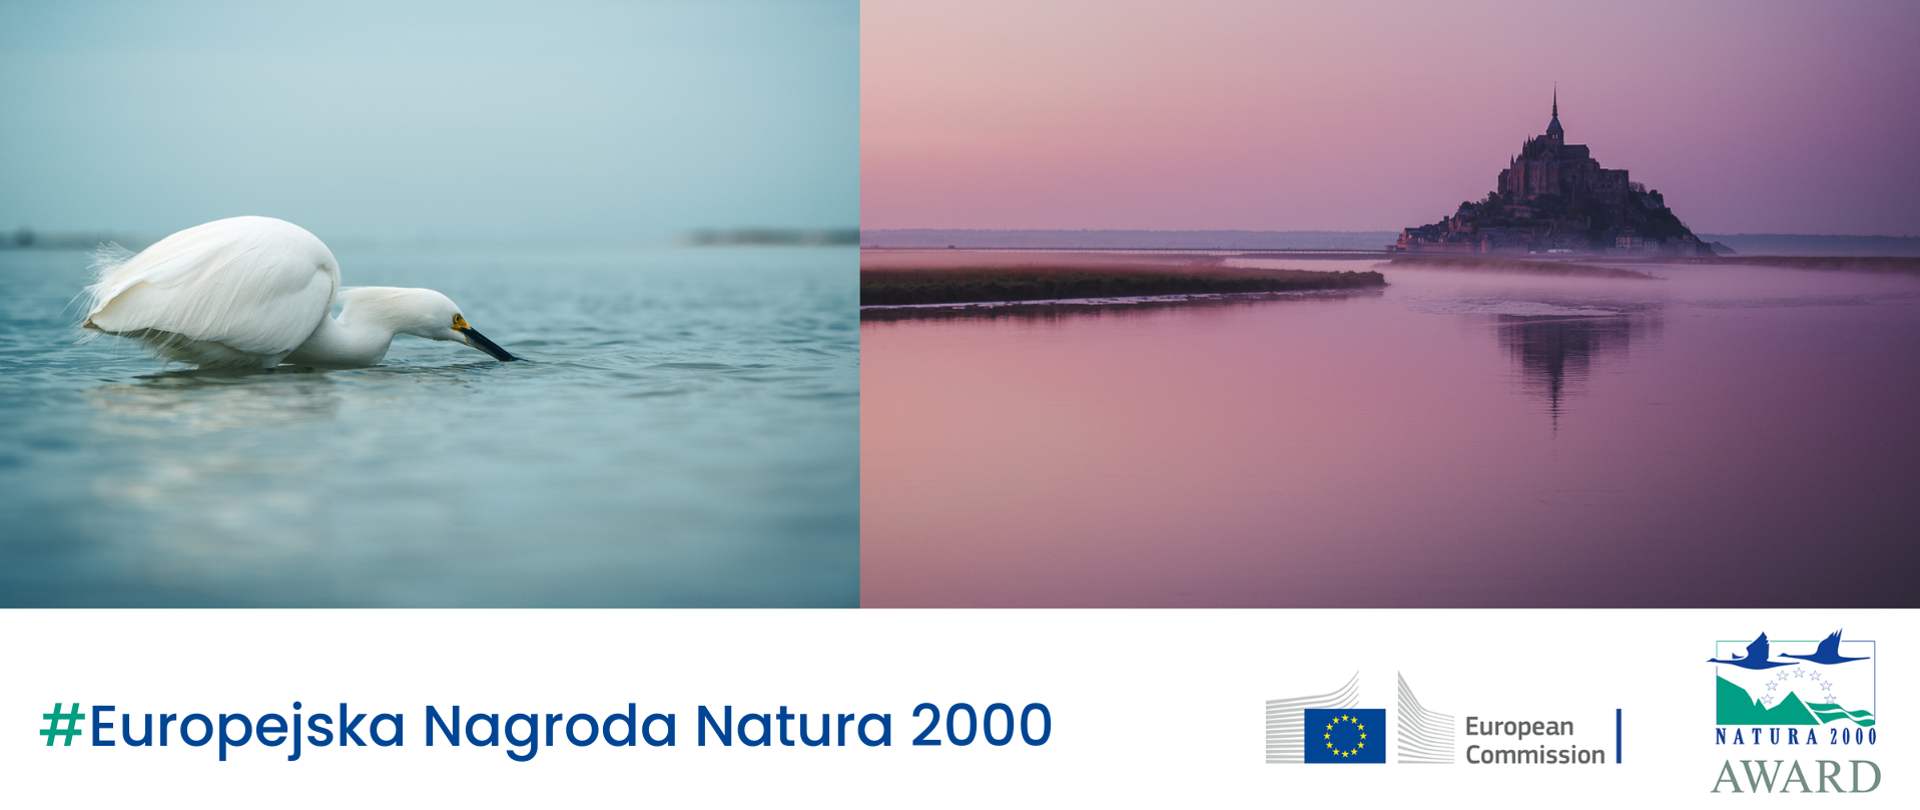 Dwa zdjęcia zestawione ze sobą. Na jednym biały ptak na wodzie, na drugim krajobraz z budowlą typu zamek.
Na dole napis #Europejska Nagroda Natura 2000 i dwa logotypy: Komisji Europejskiej i Europejskiej Nagrody Natura 2000.